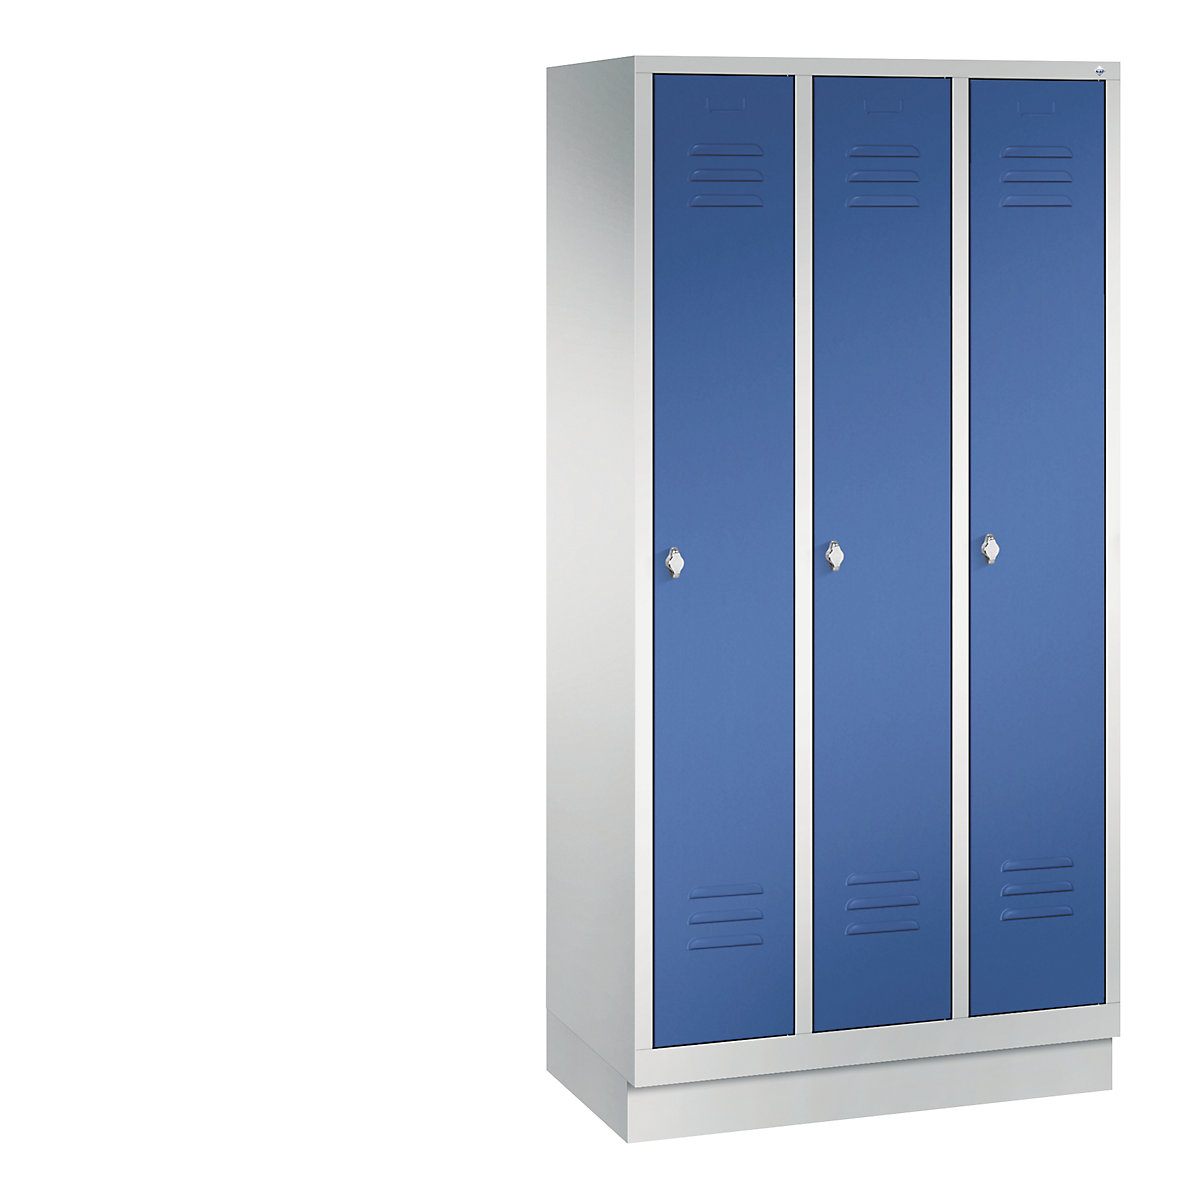 Garderobna omara CLASSIC s podnožjem – C+P, 3 predelki, širina 300 mm/predelek, svetlo sive / encijan modre barve-13